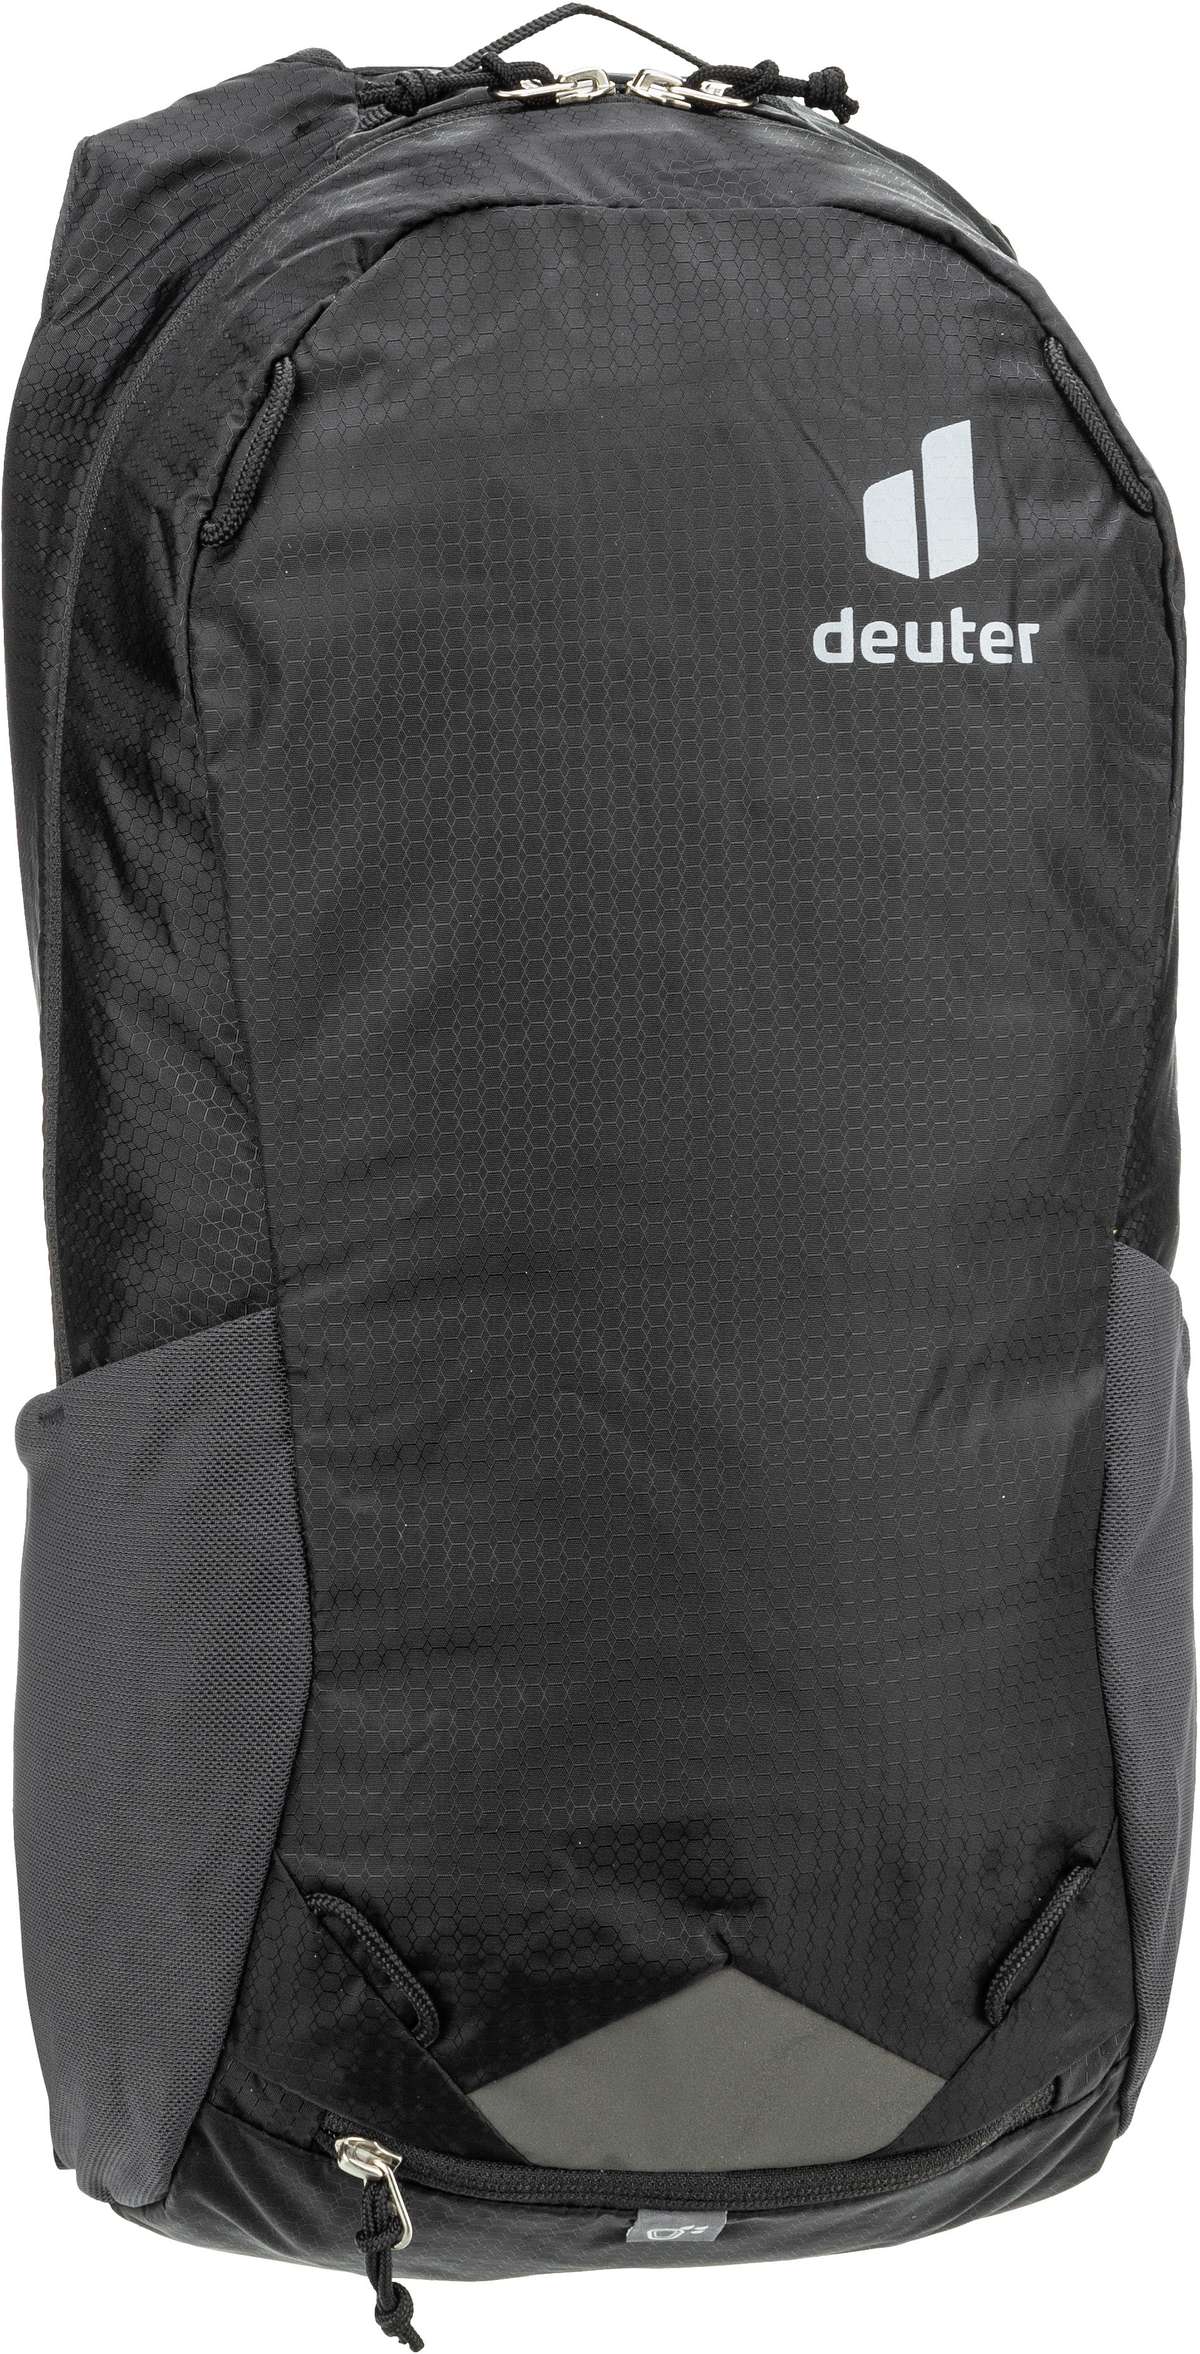 Deuter Deuter Race 12 in Schwarz (12 Liter), Rucksack / Backpack